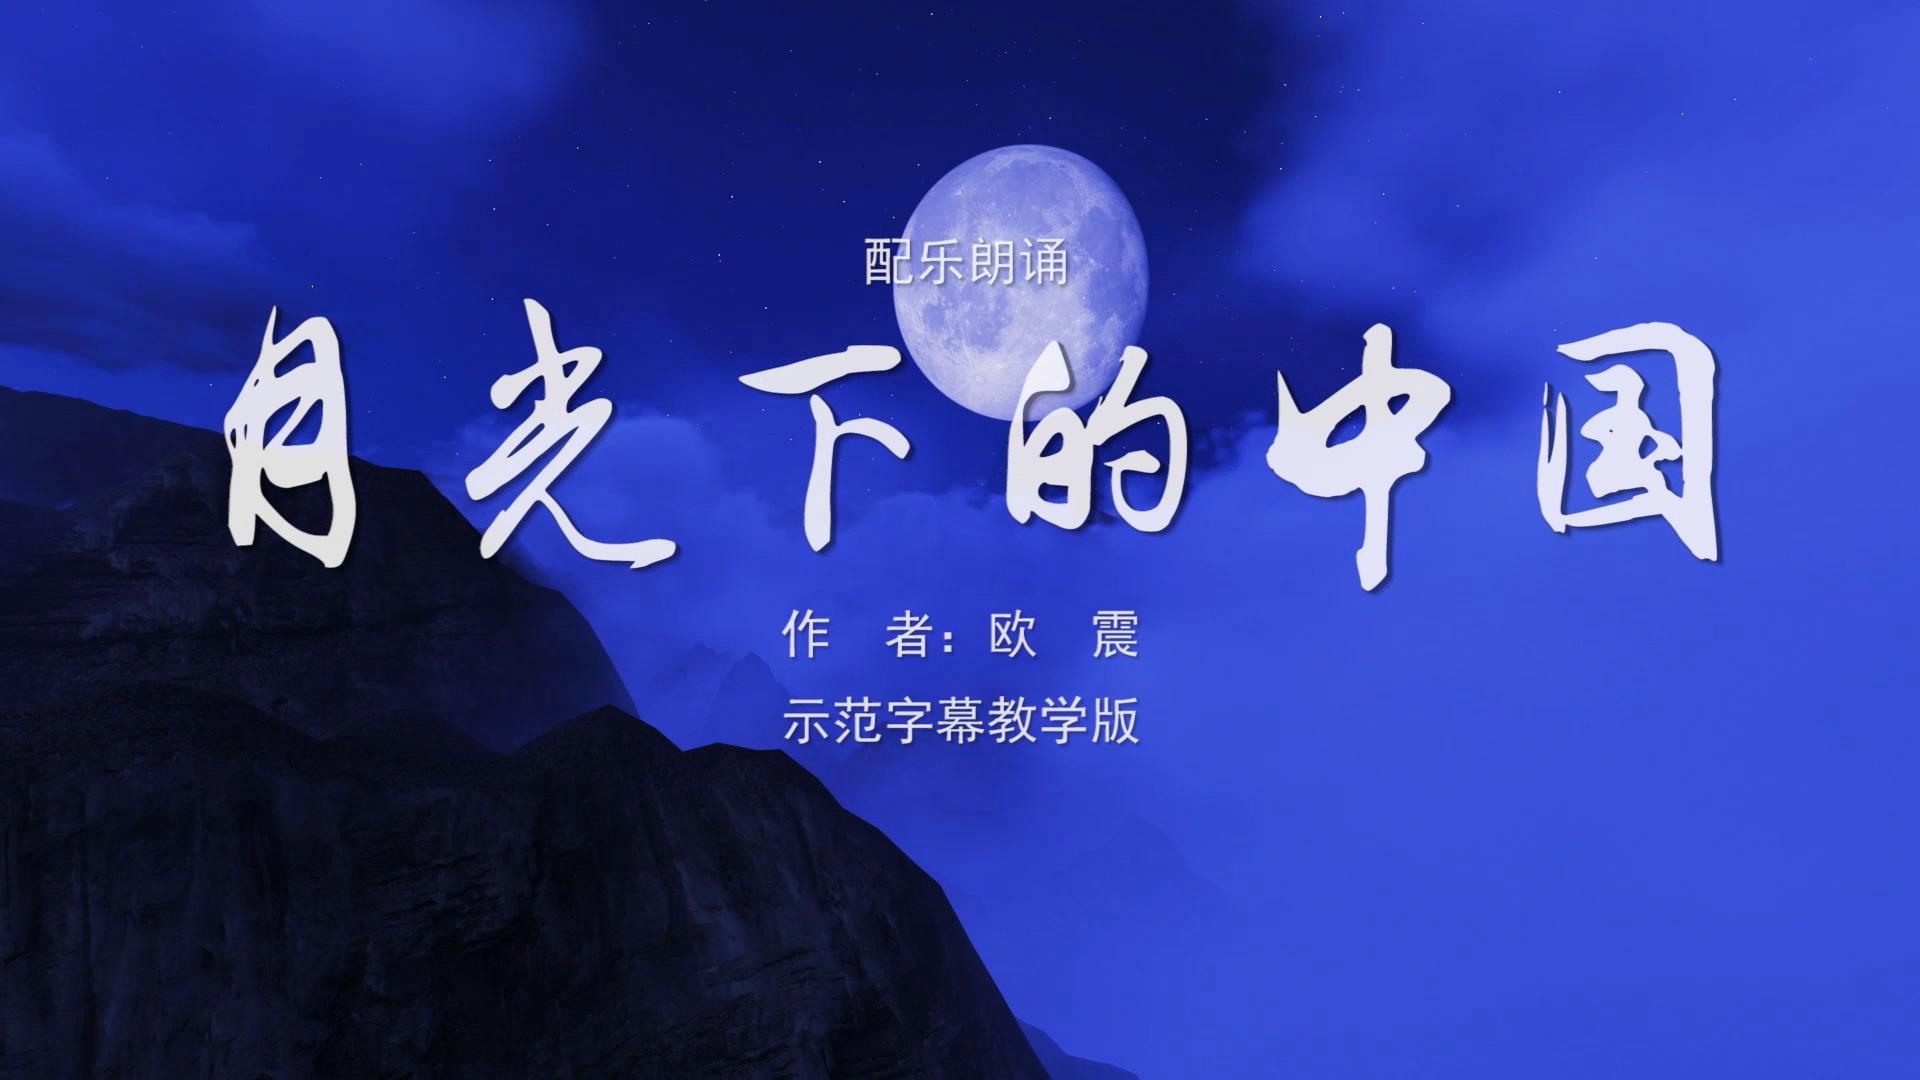 月光下的中国 诗歌朗诵配乐伴奏舞台演出LED背景大屏幕视频素材TV